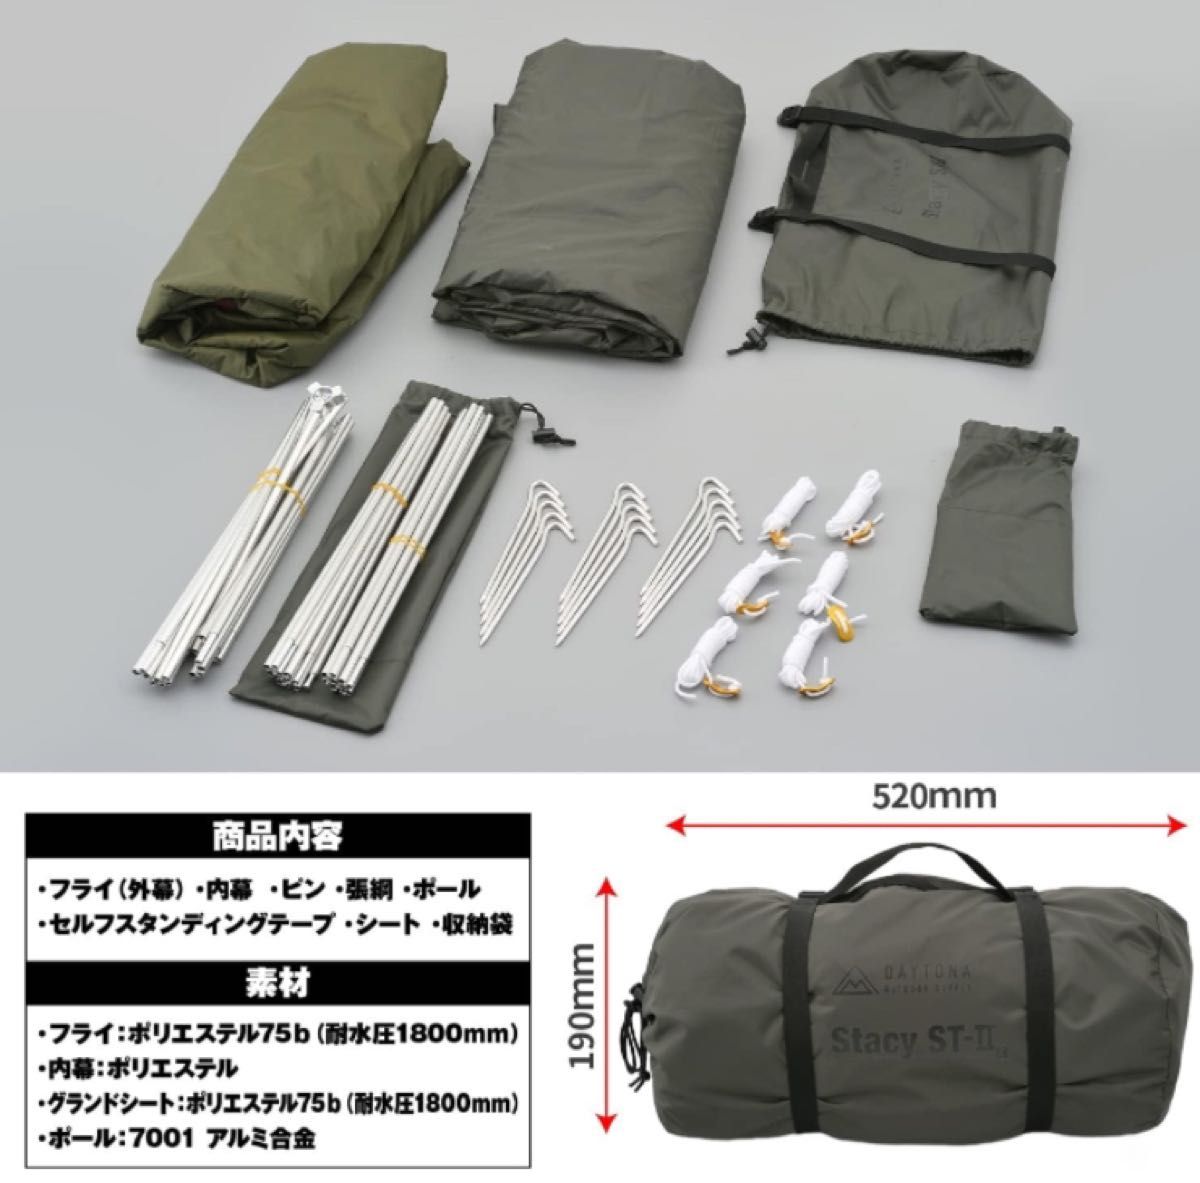 【新品】デイトナ ツーリングテント ST-Ⅱ カーキ テント キャンプ ツーリング DAYTONA 16032 